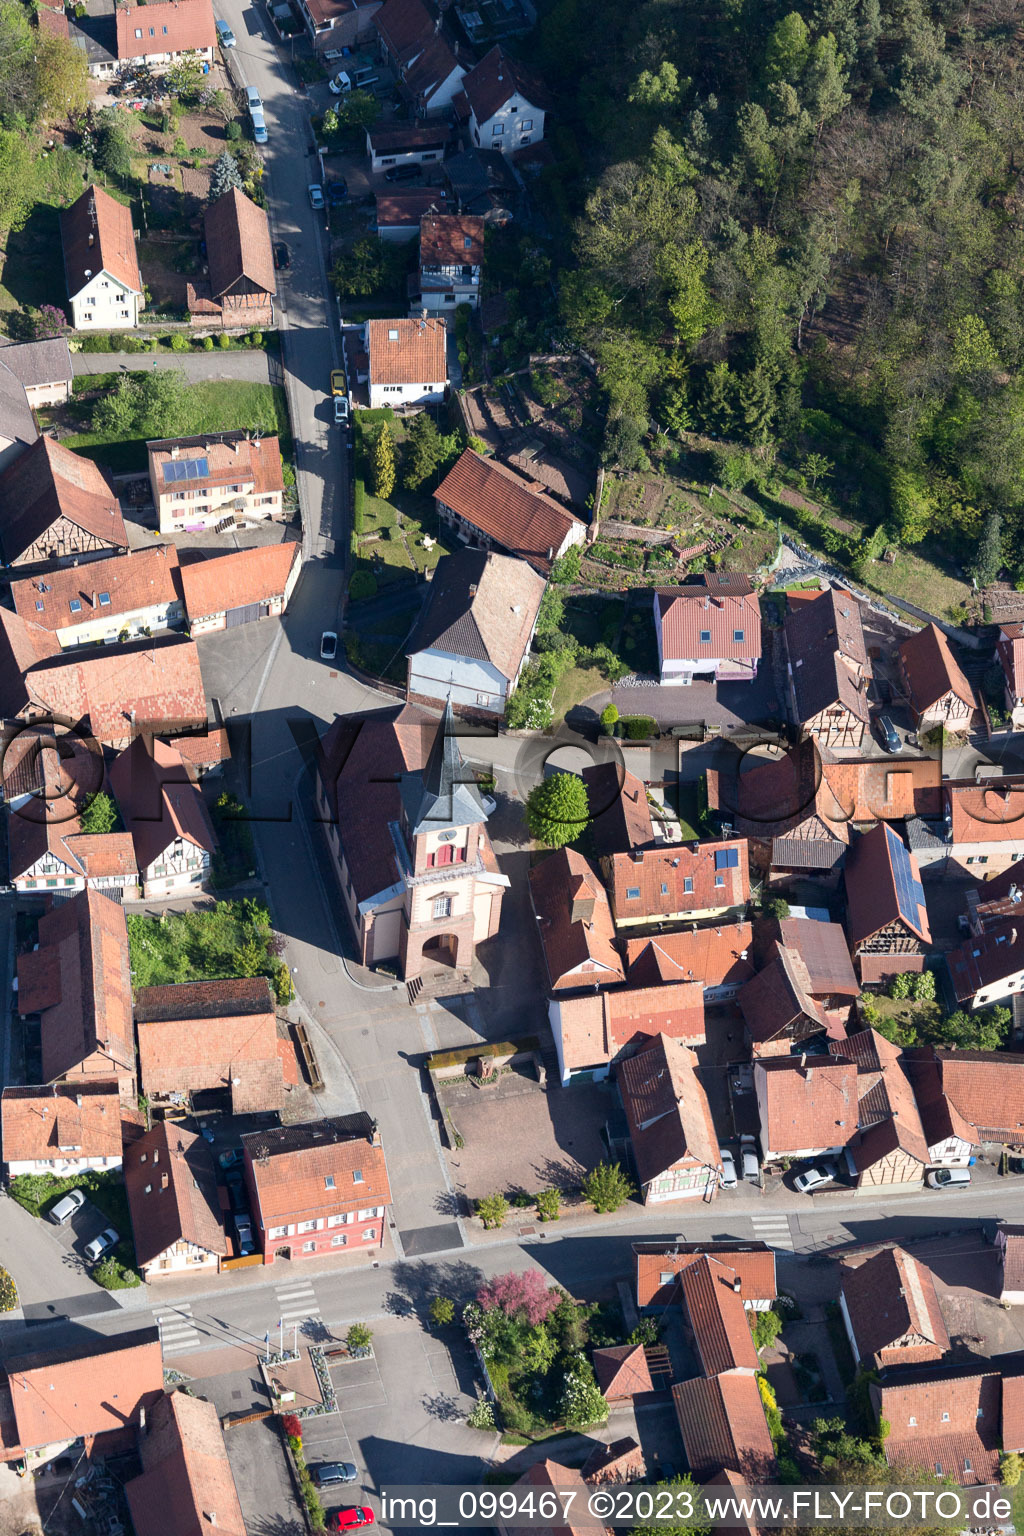 Offwiller im Bundesland Bas-Rhin, Frankreich aus der Luft betrachtet